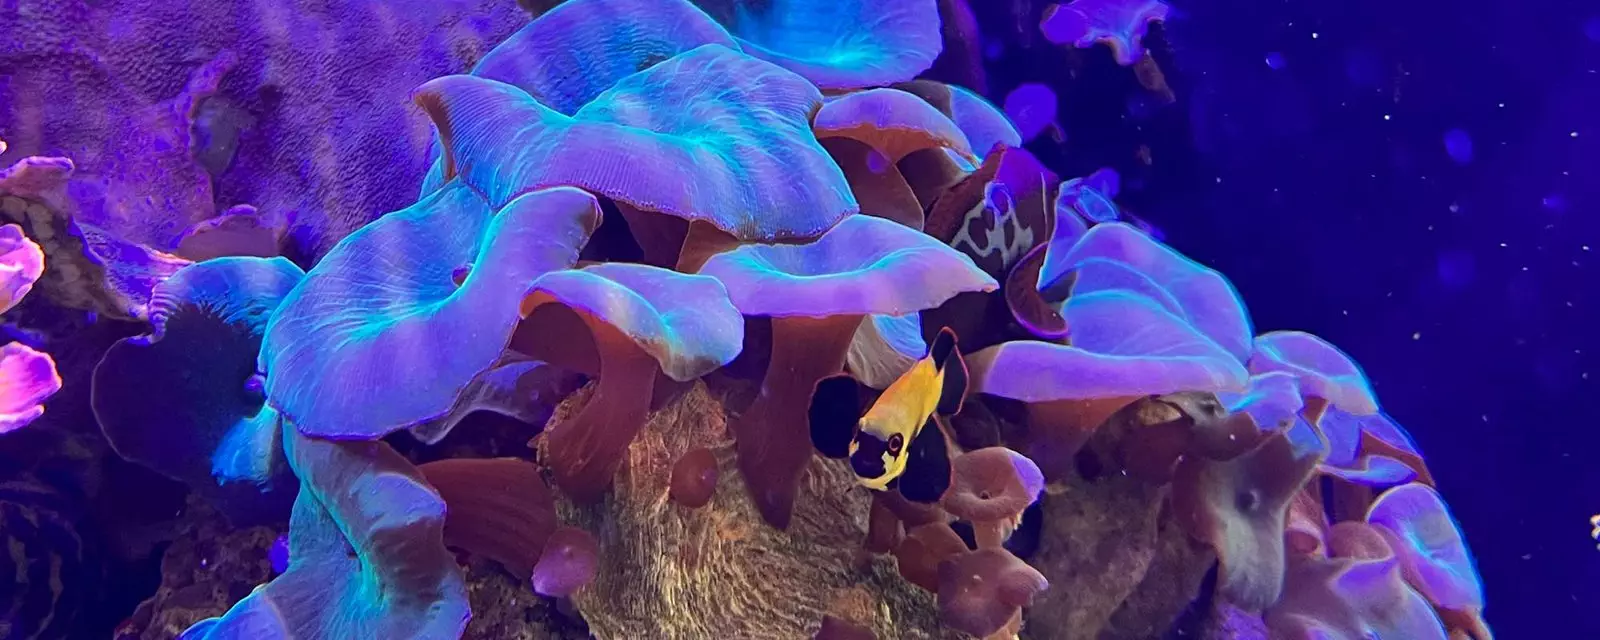 Metallic Blue Mushroom Coral (Actinodiscus spp.)